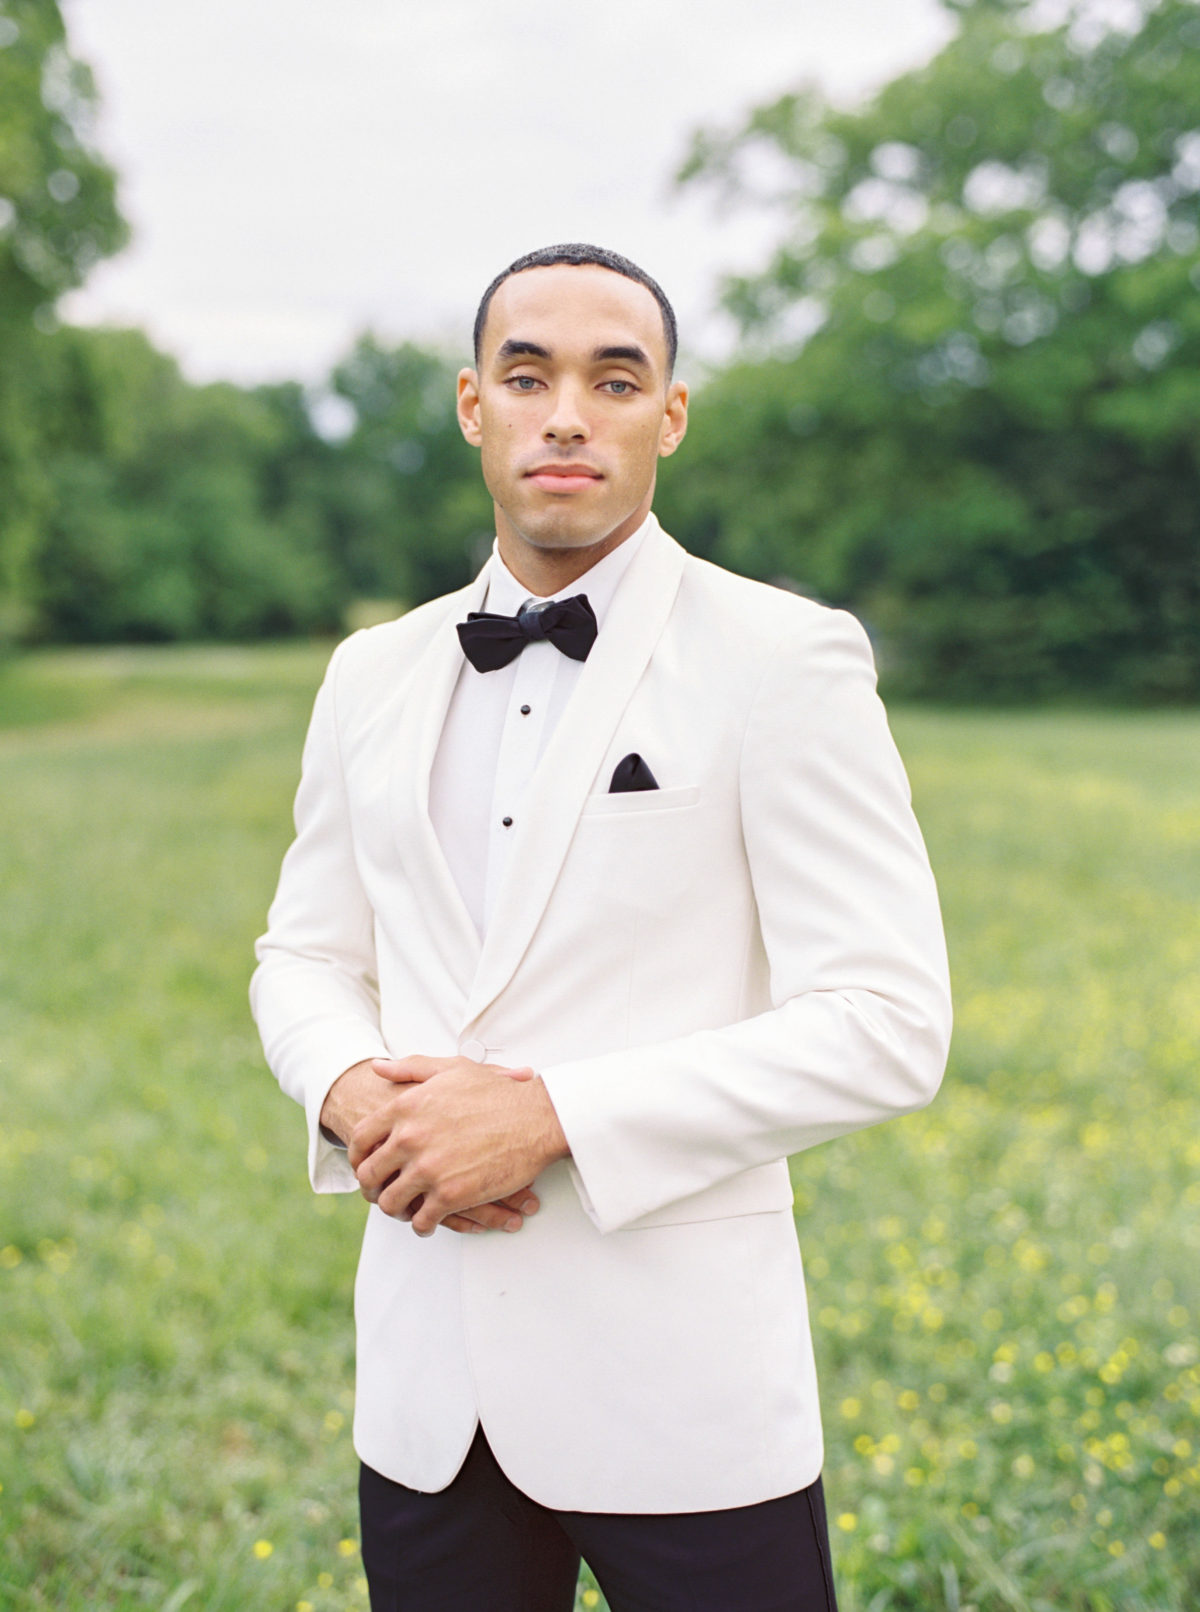 Classic white groom's tuxedo by Street Tuxedo for Green Door Gourmet wedding in Nashville.